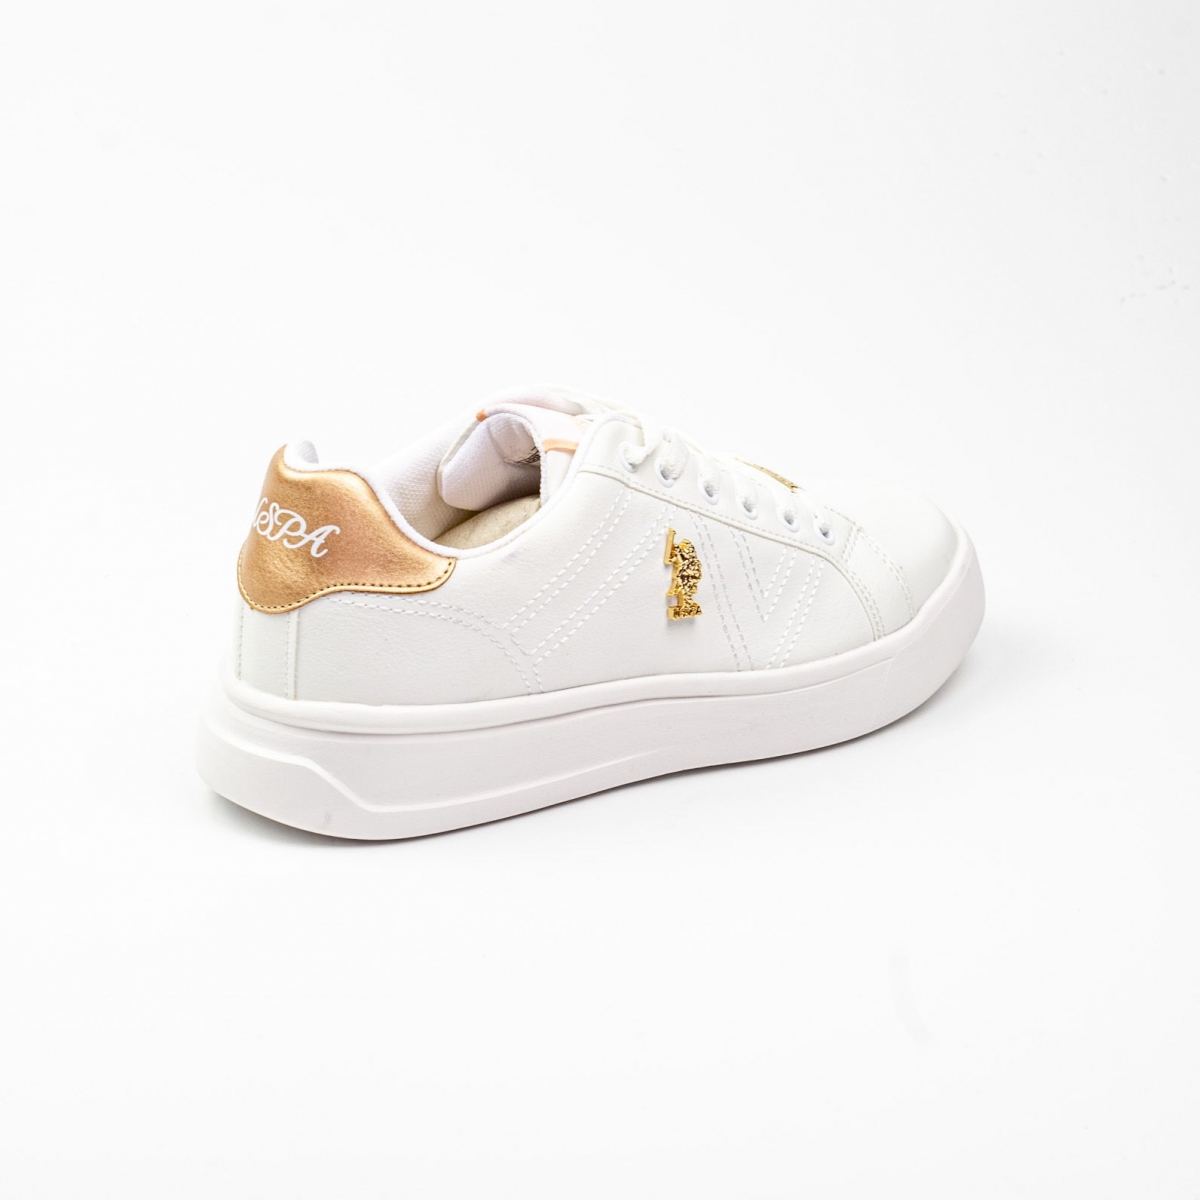 Flo Kadın Spor Ayakkabı Exxy Beyaz/White 21S040EXXY. 4